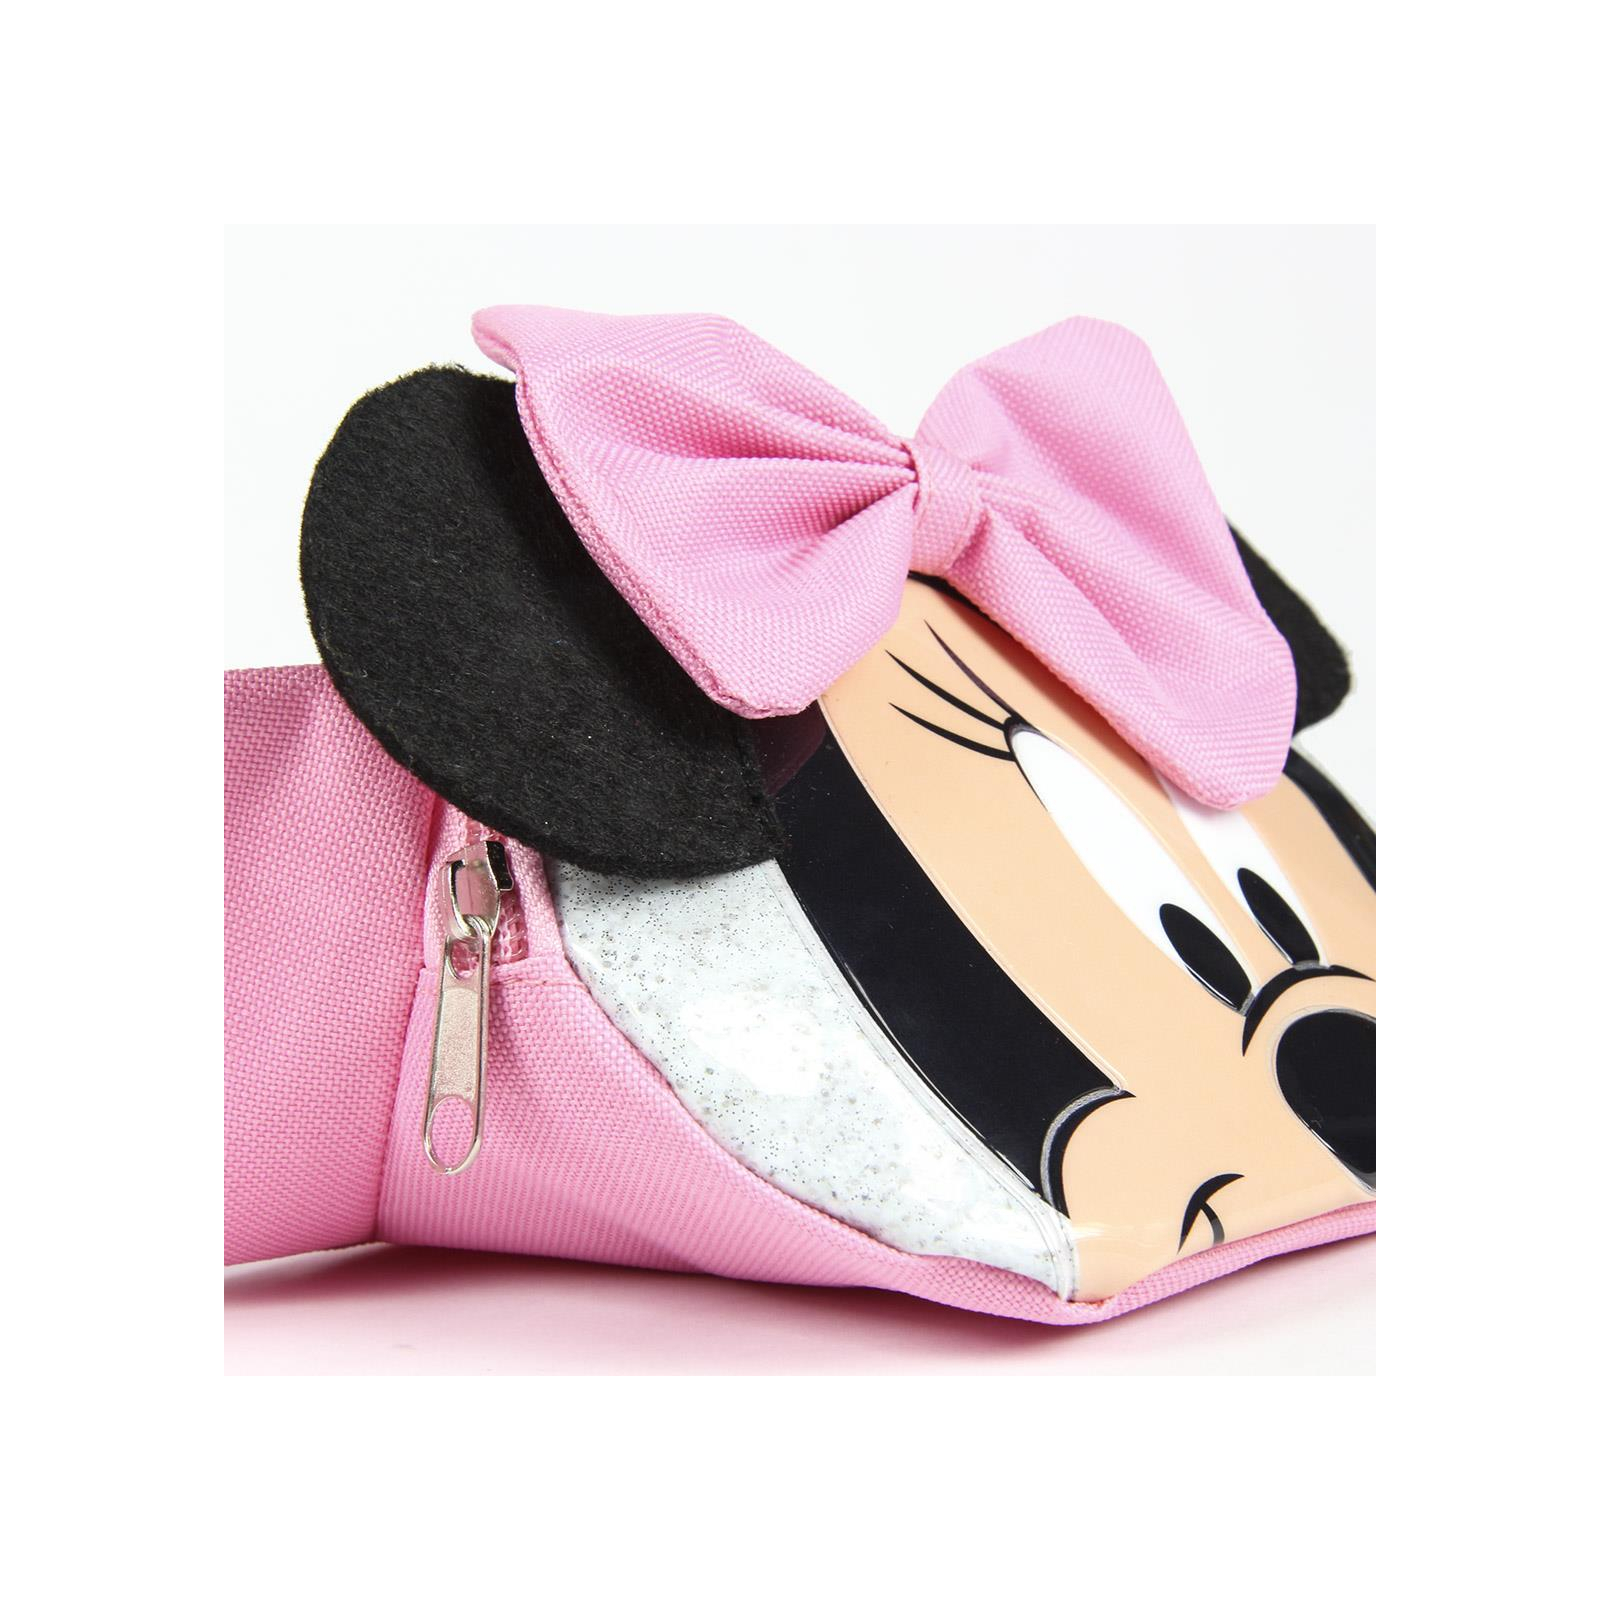 Сумка-бананка Cerda Disney - Minnie Rinonera Handbag (CERDA-2100002654) изображение 3